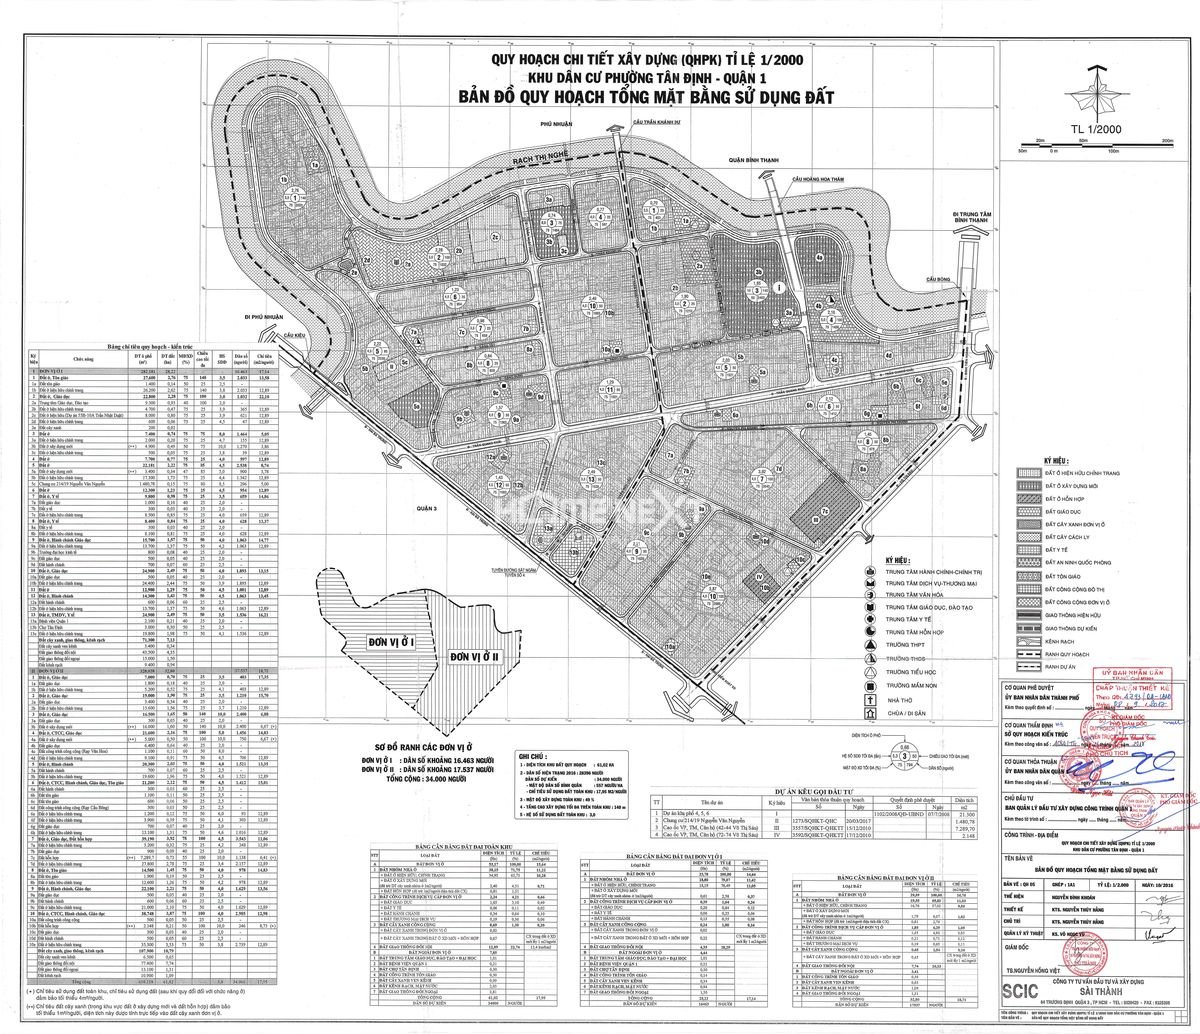 Bản đồ quy hoạch sử dụng đất 1/2000 phường Tân Định quận 1